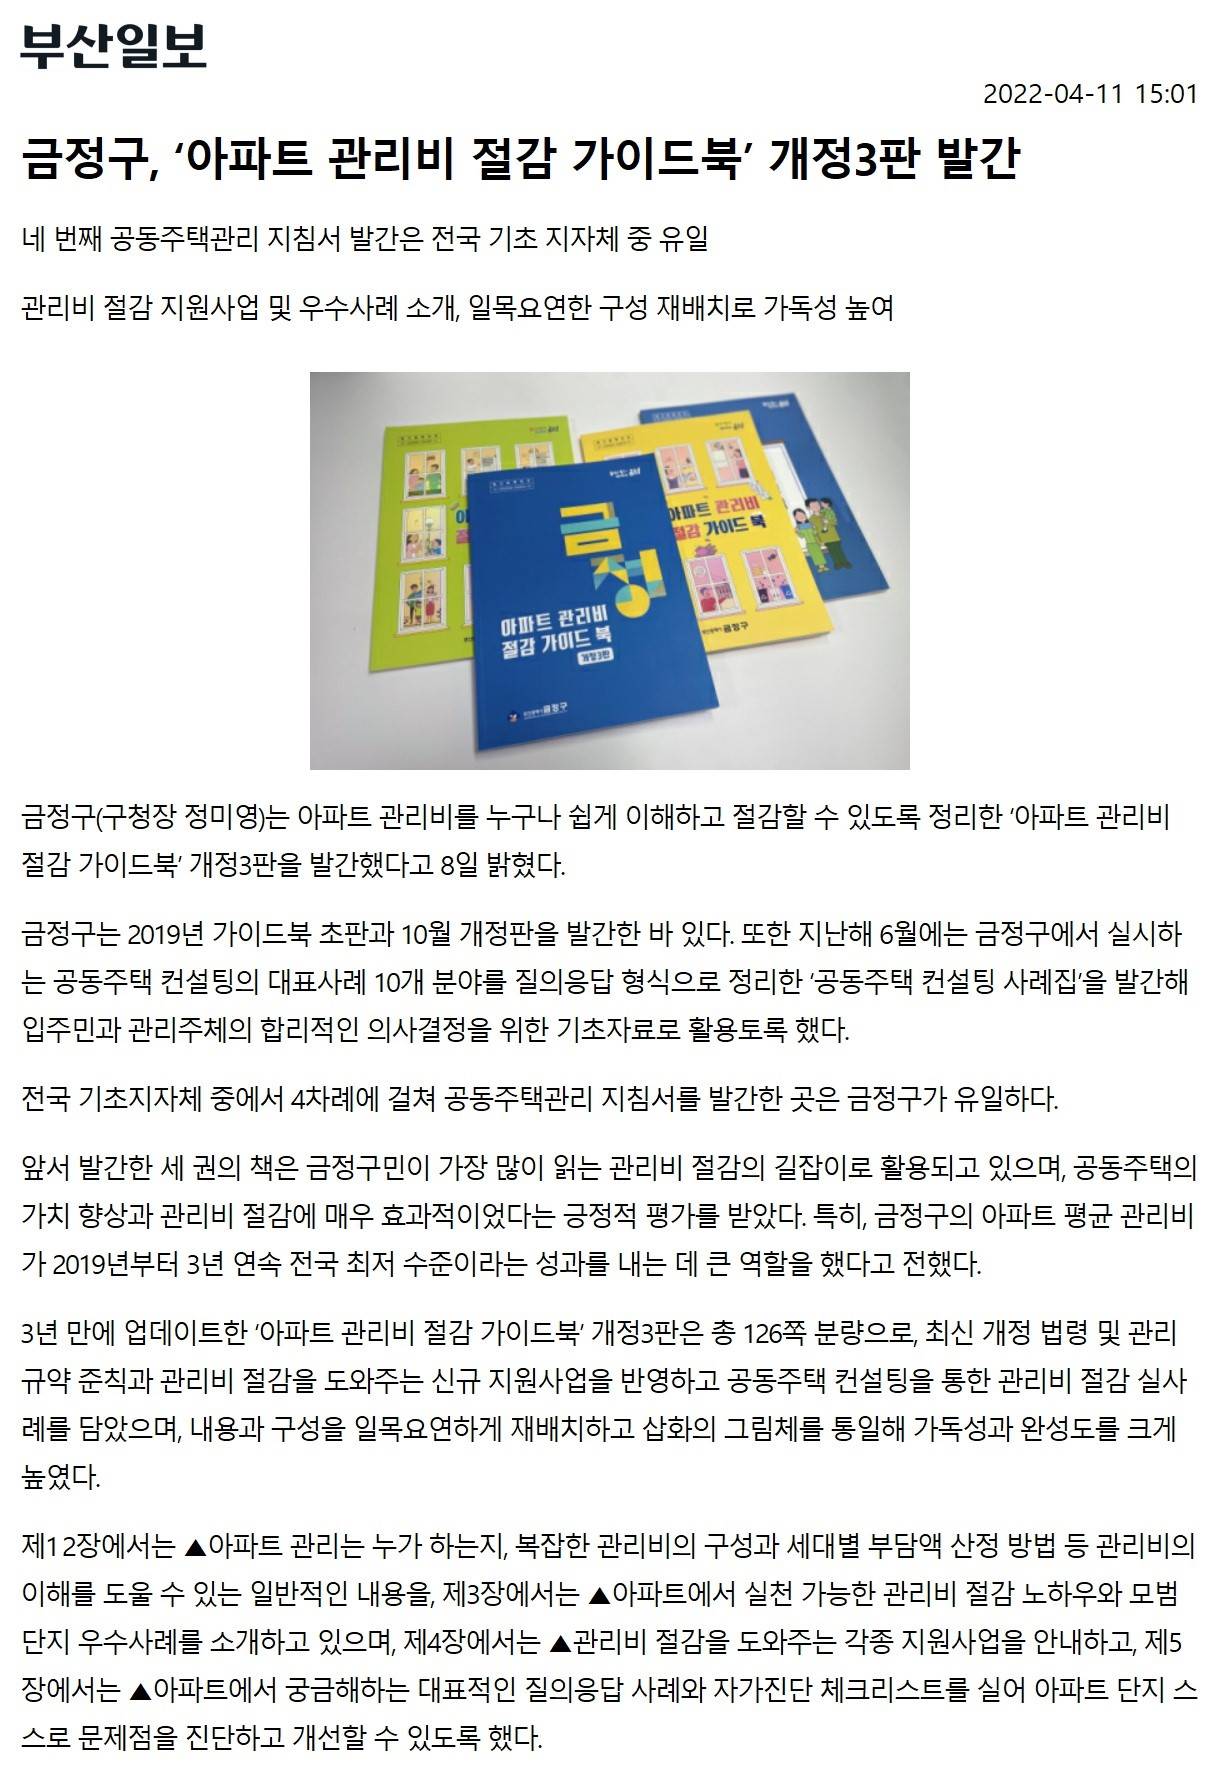 금정구,아파트관리비절감가이드북개정3판발간(1).jpg